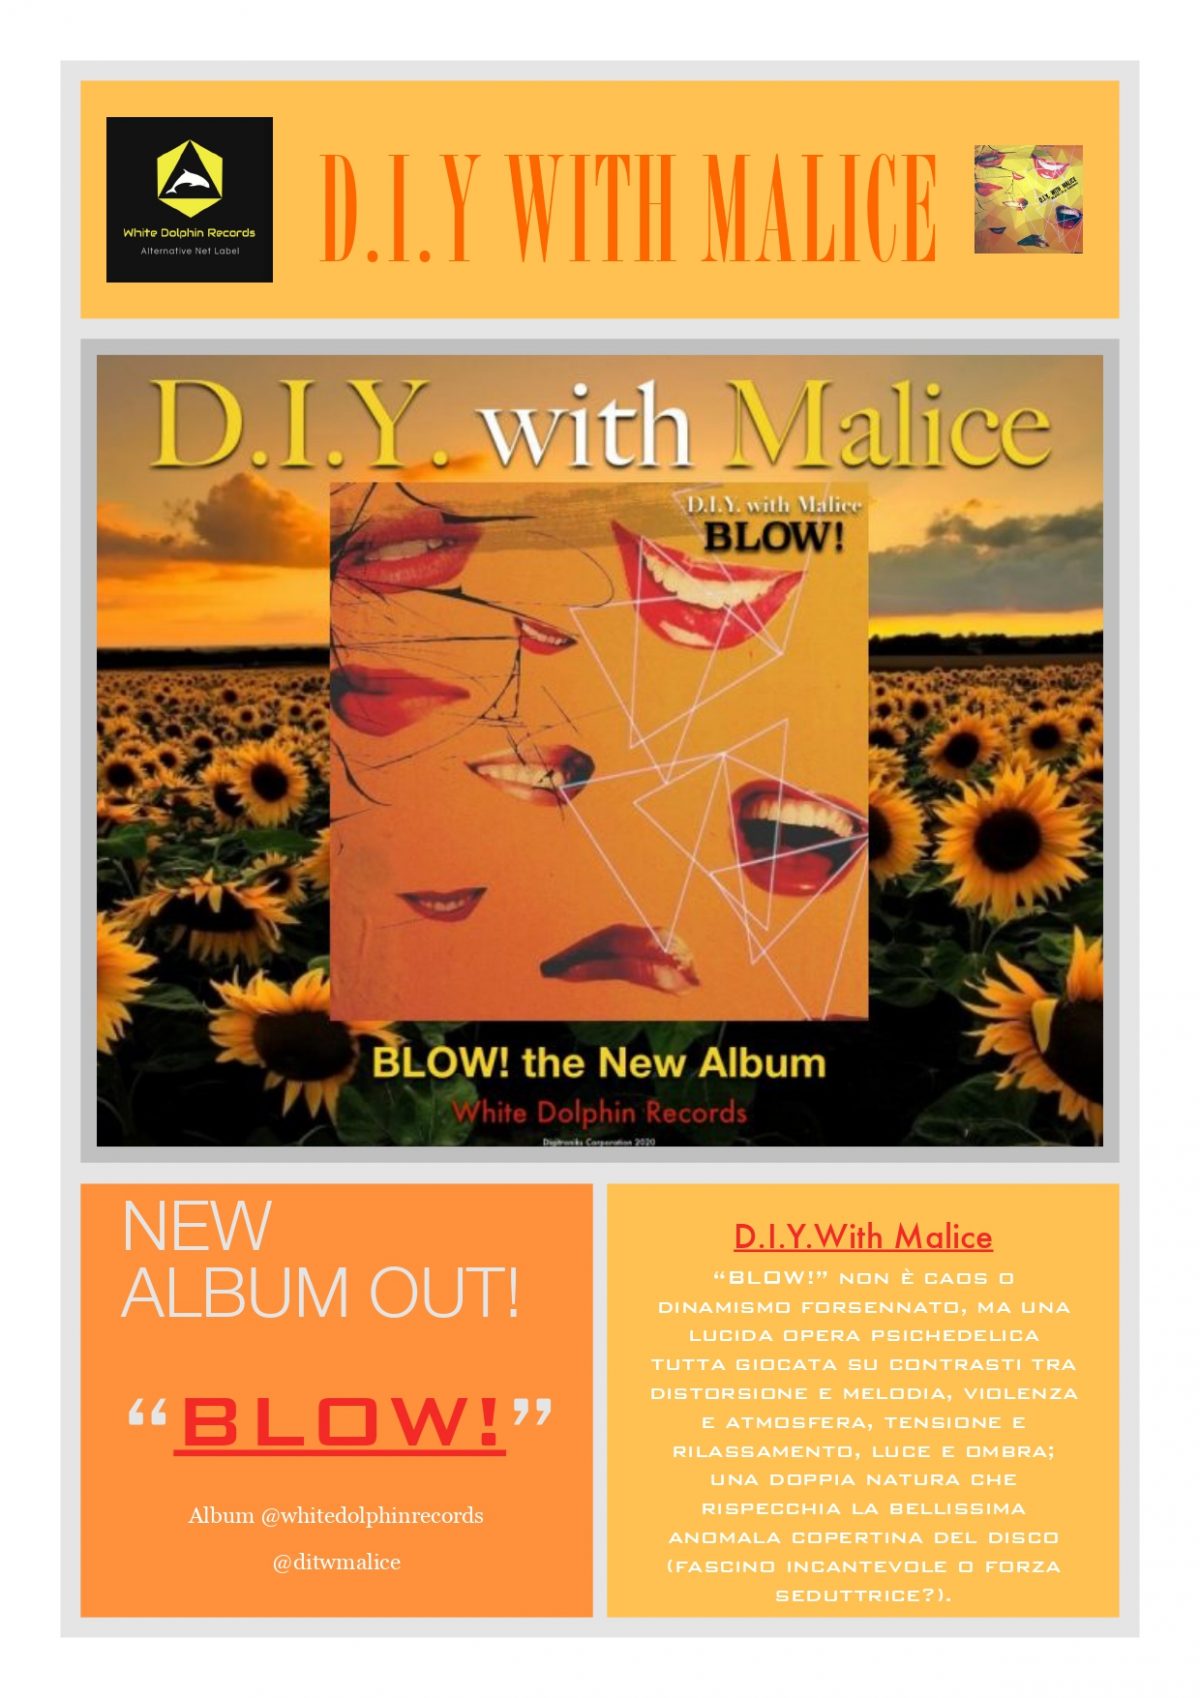 Pubblicato dall’etichetta alternativa White Dolphin Records ,”BLOW!” è l’album d’esordio dei D.I.Y. with Malice.